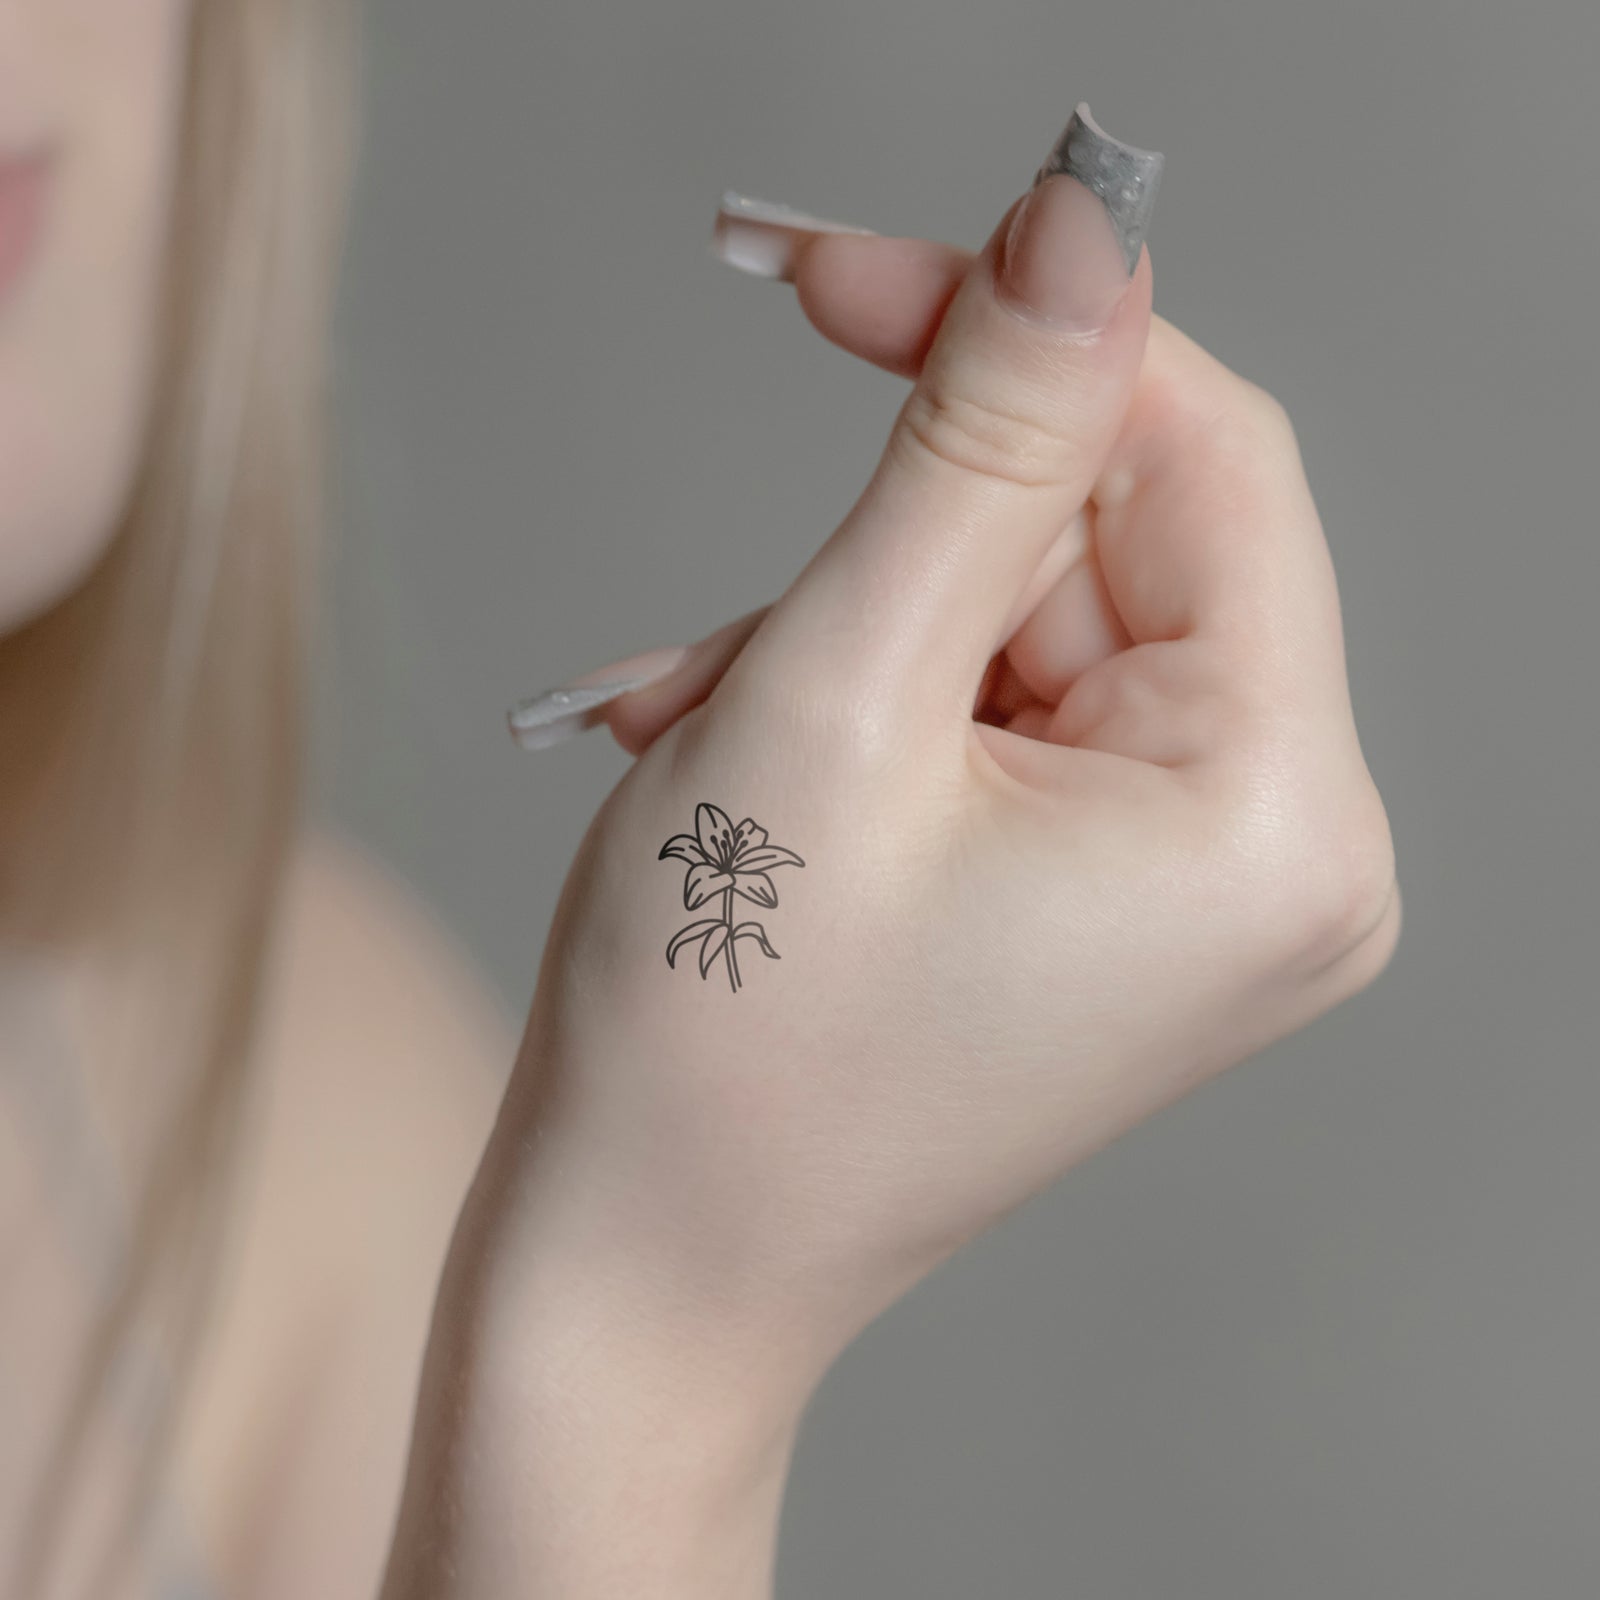 Lily Tattoo | Temporary Tattoos - minink